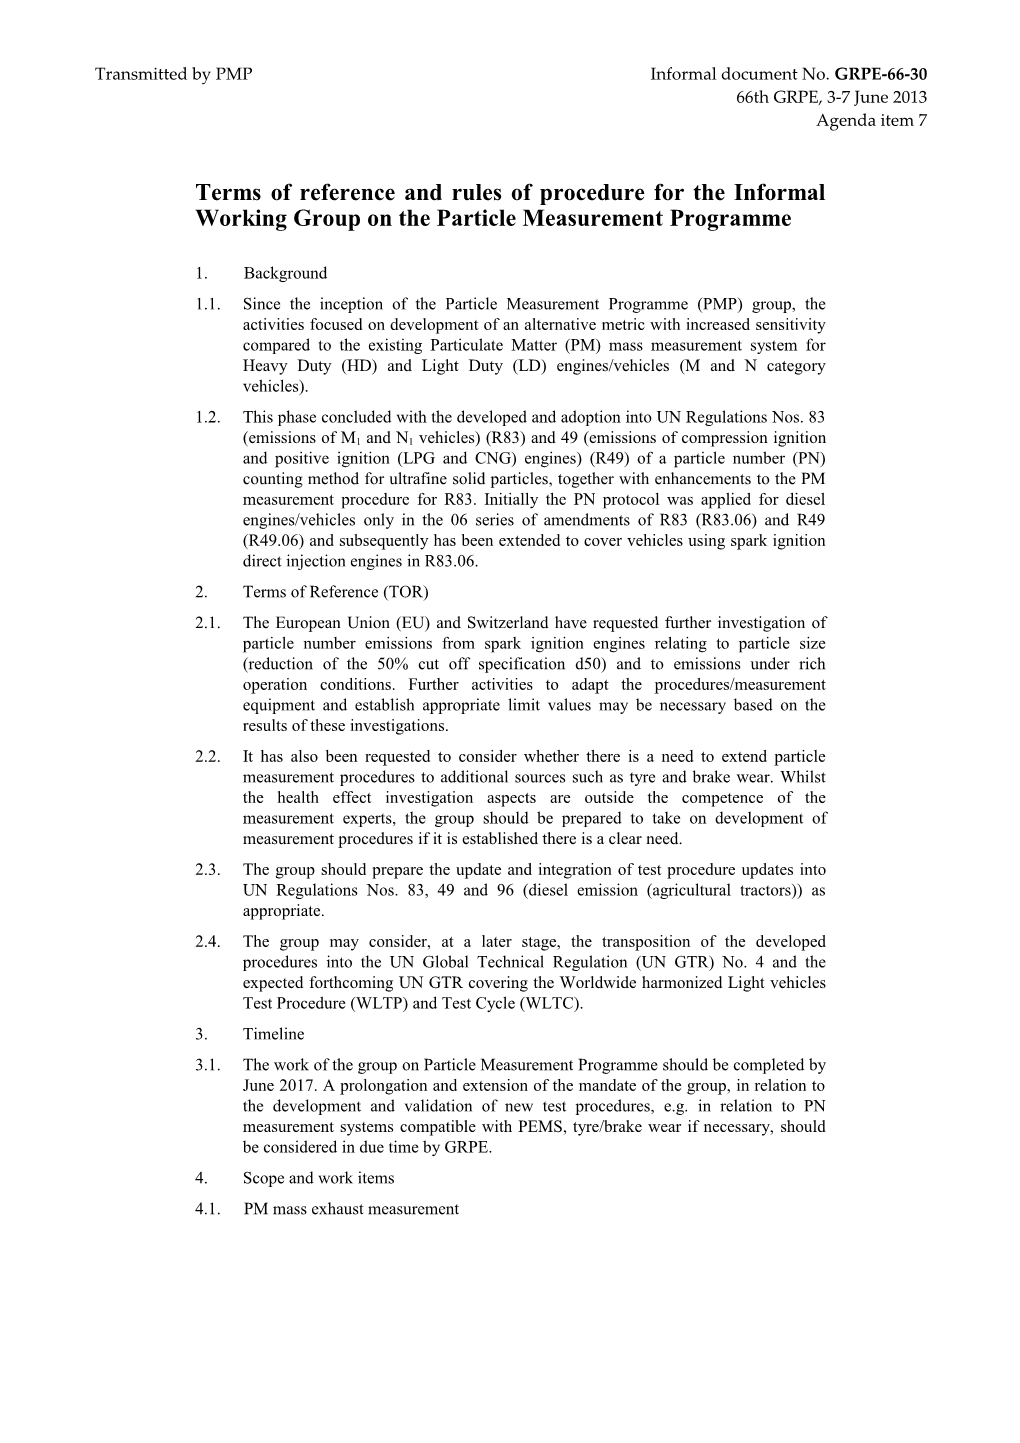 United Nations World Forum for Harmonization of Vehicle Regulations (WP.29)